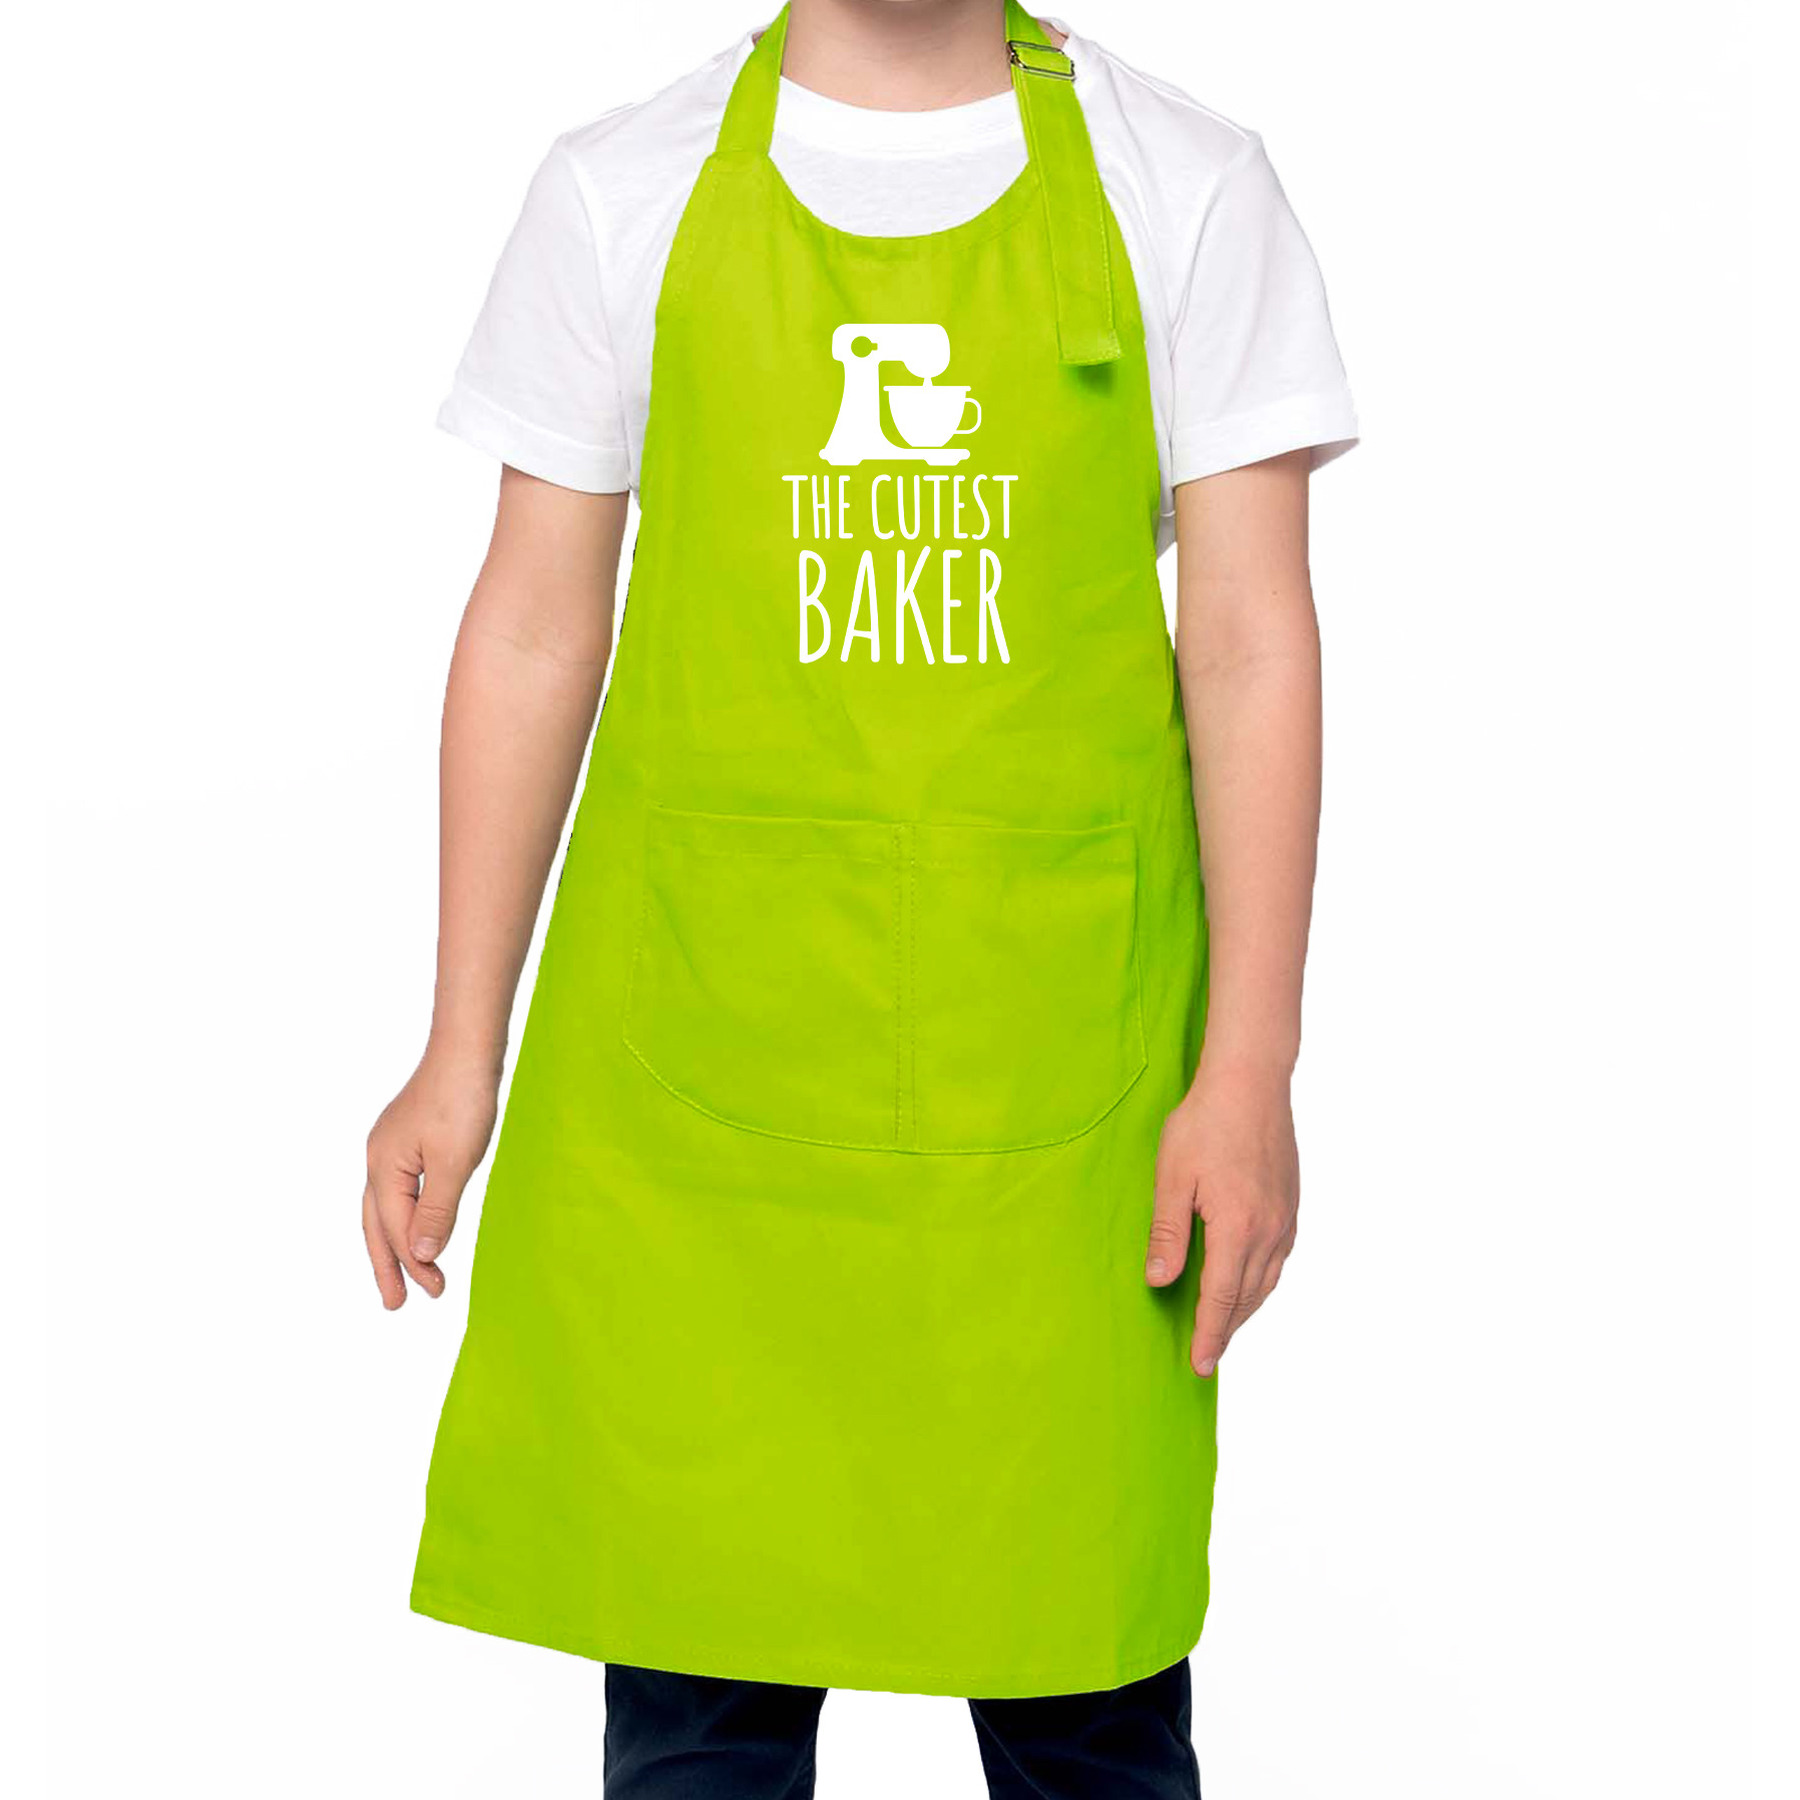 The cutest baker keukenschort- kinder bakschort groen voor jongens en meisjes Bakken met kinderen